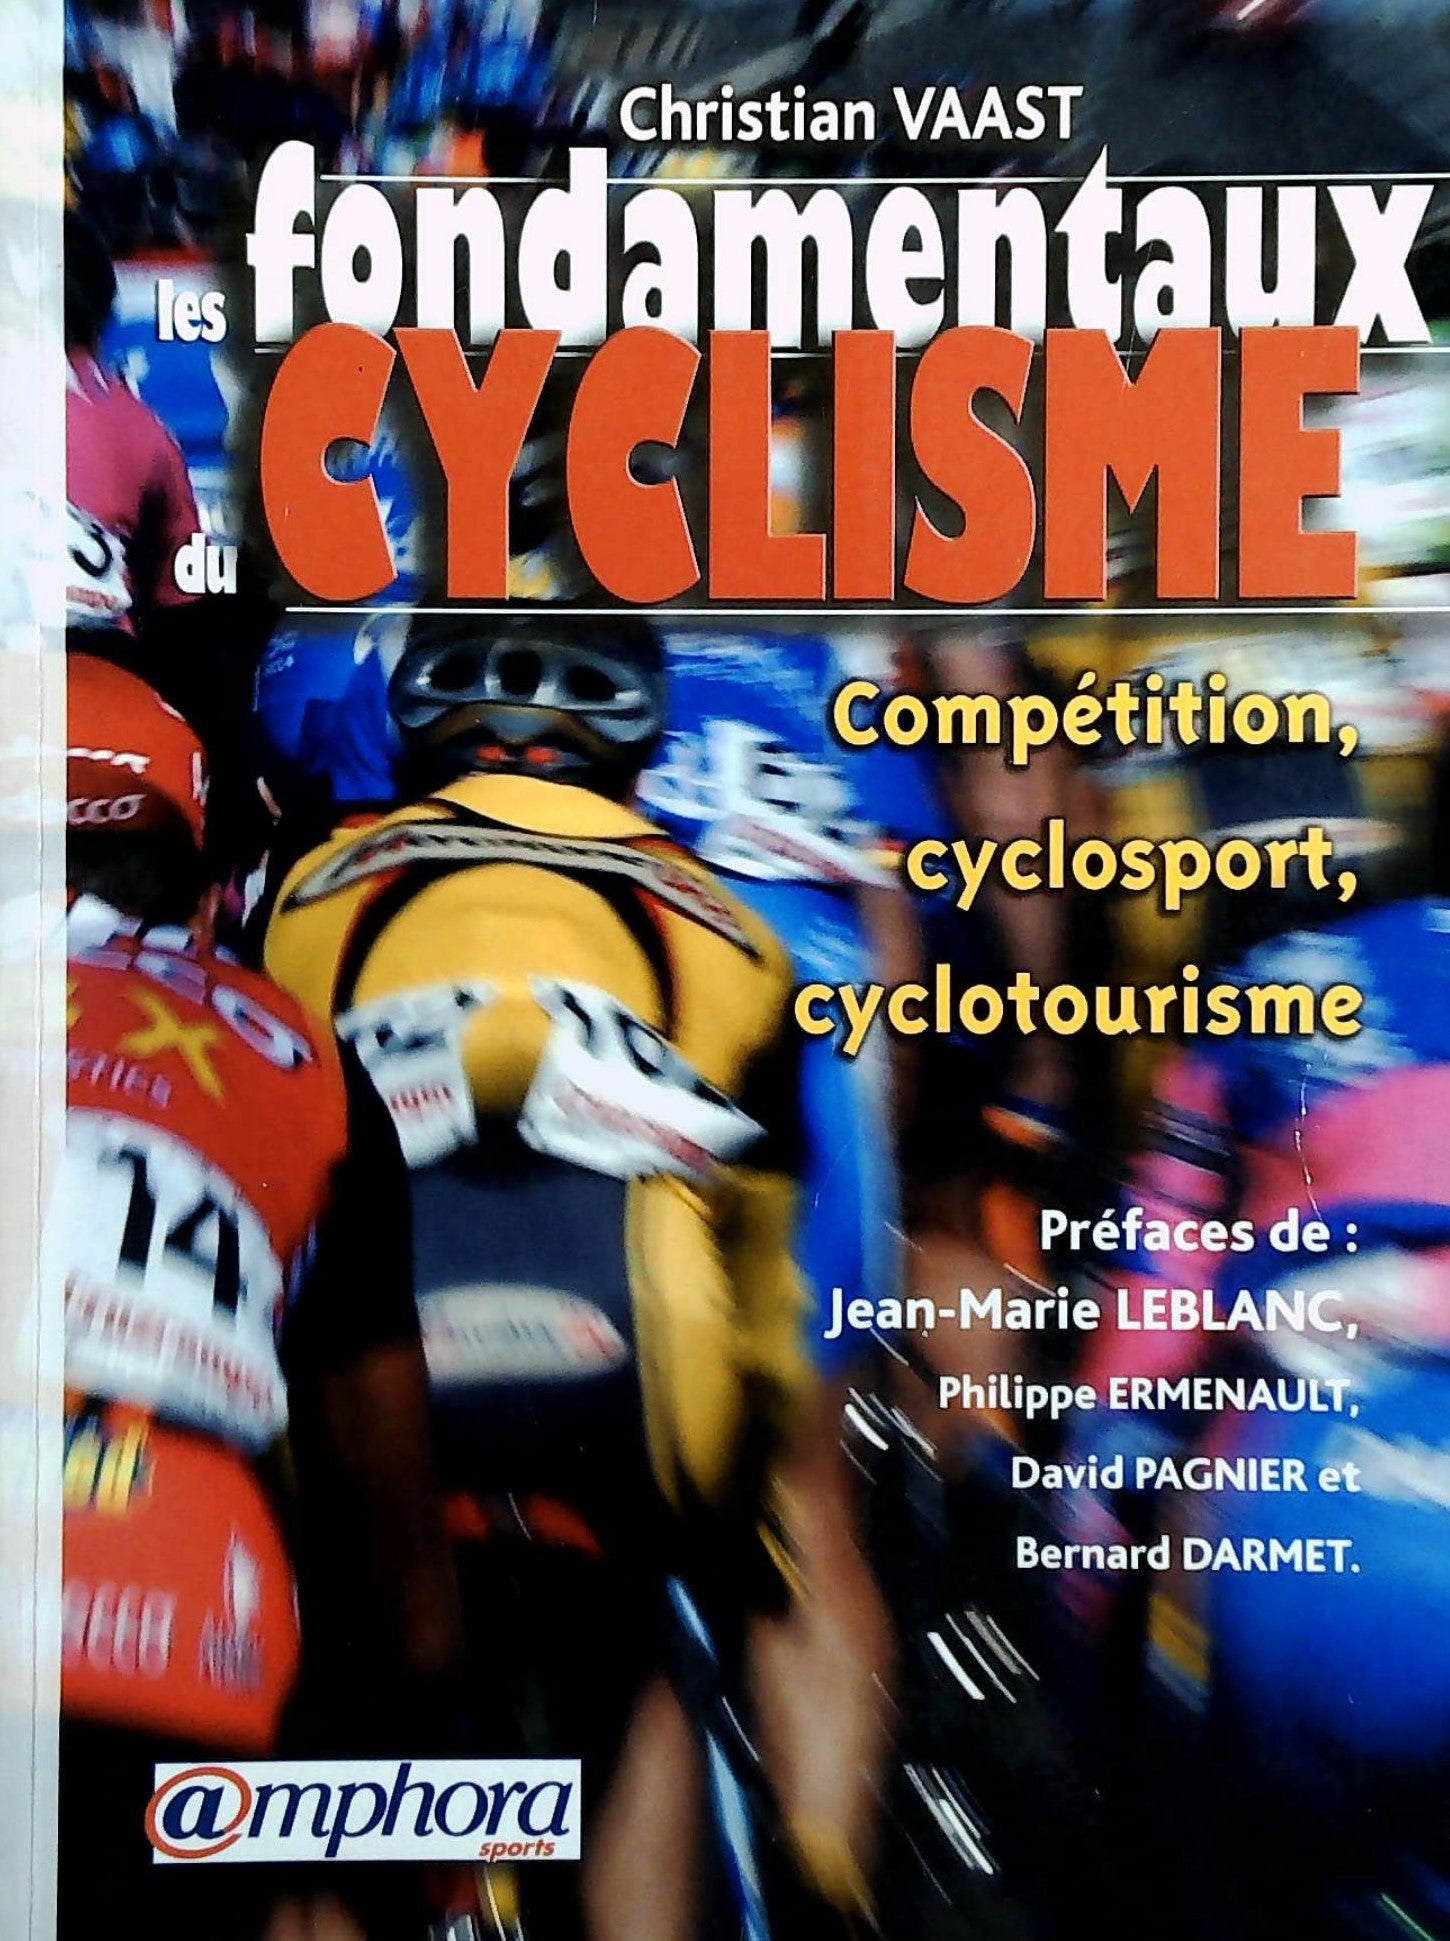 Livre ISBN 2851806181 Les fondamentaux du cyclisme : Compétition, cyclosport, cyclotourisme (Christian Caast)